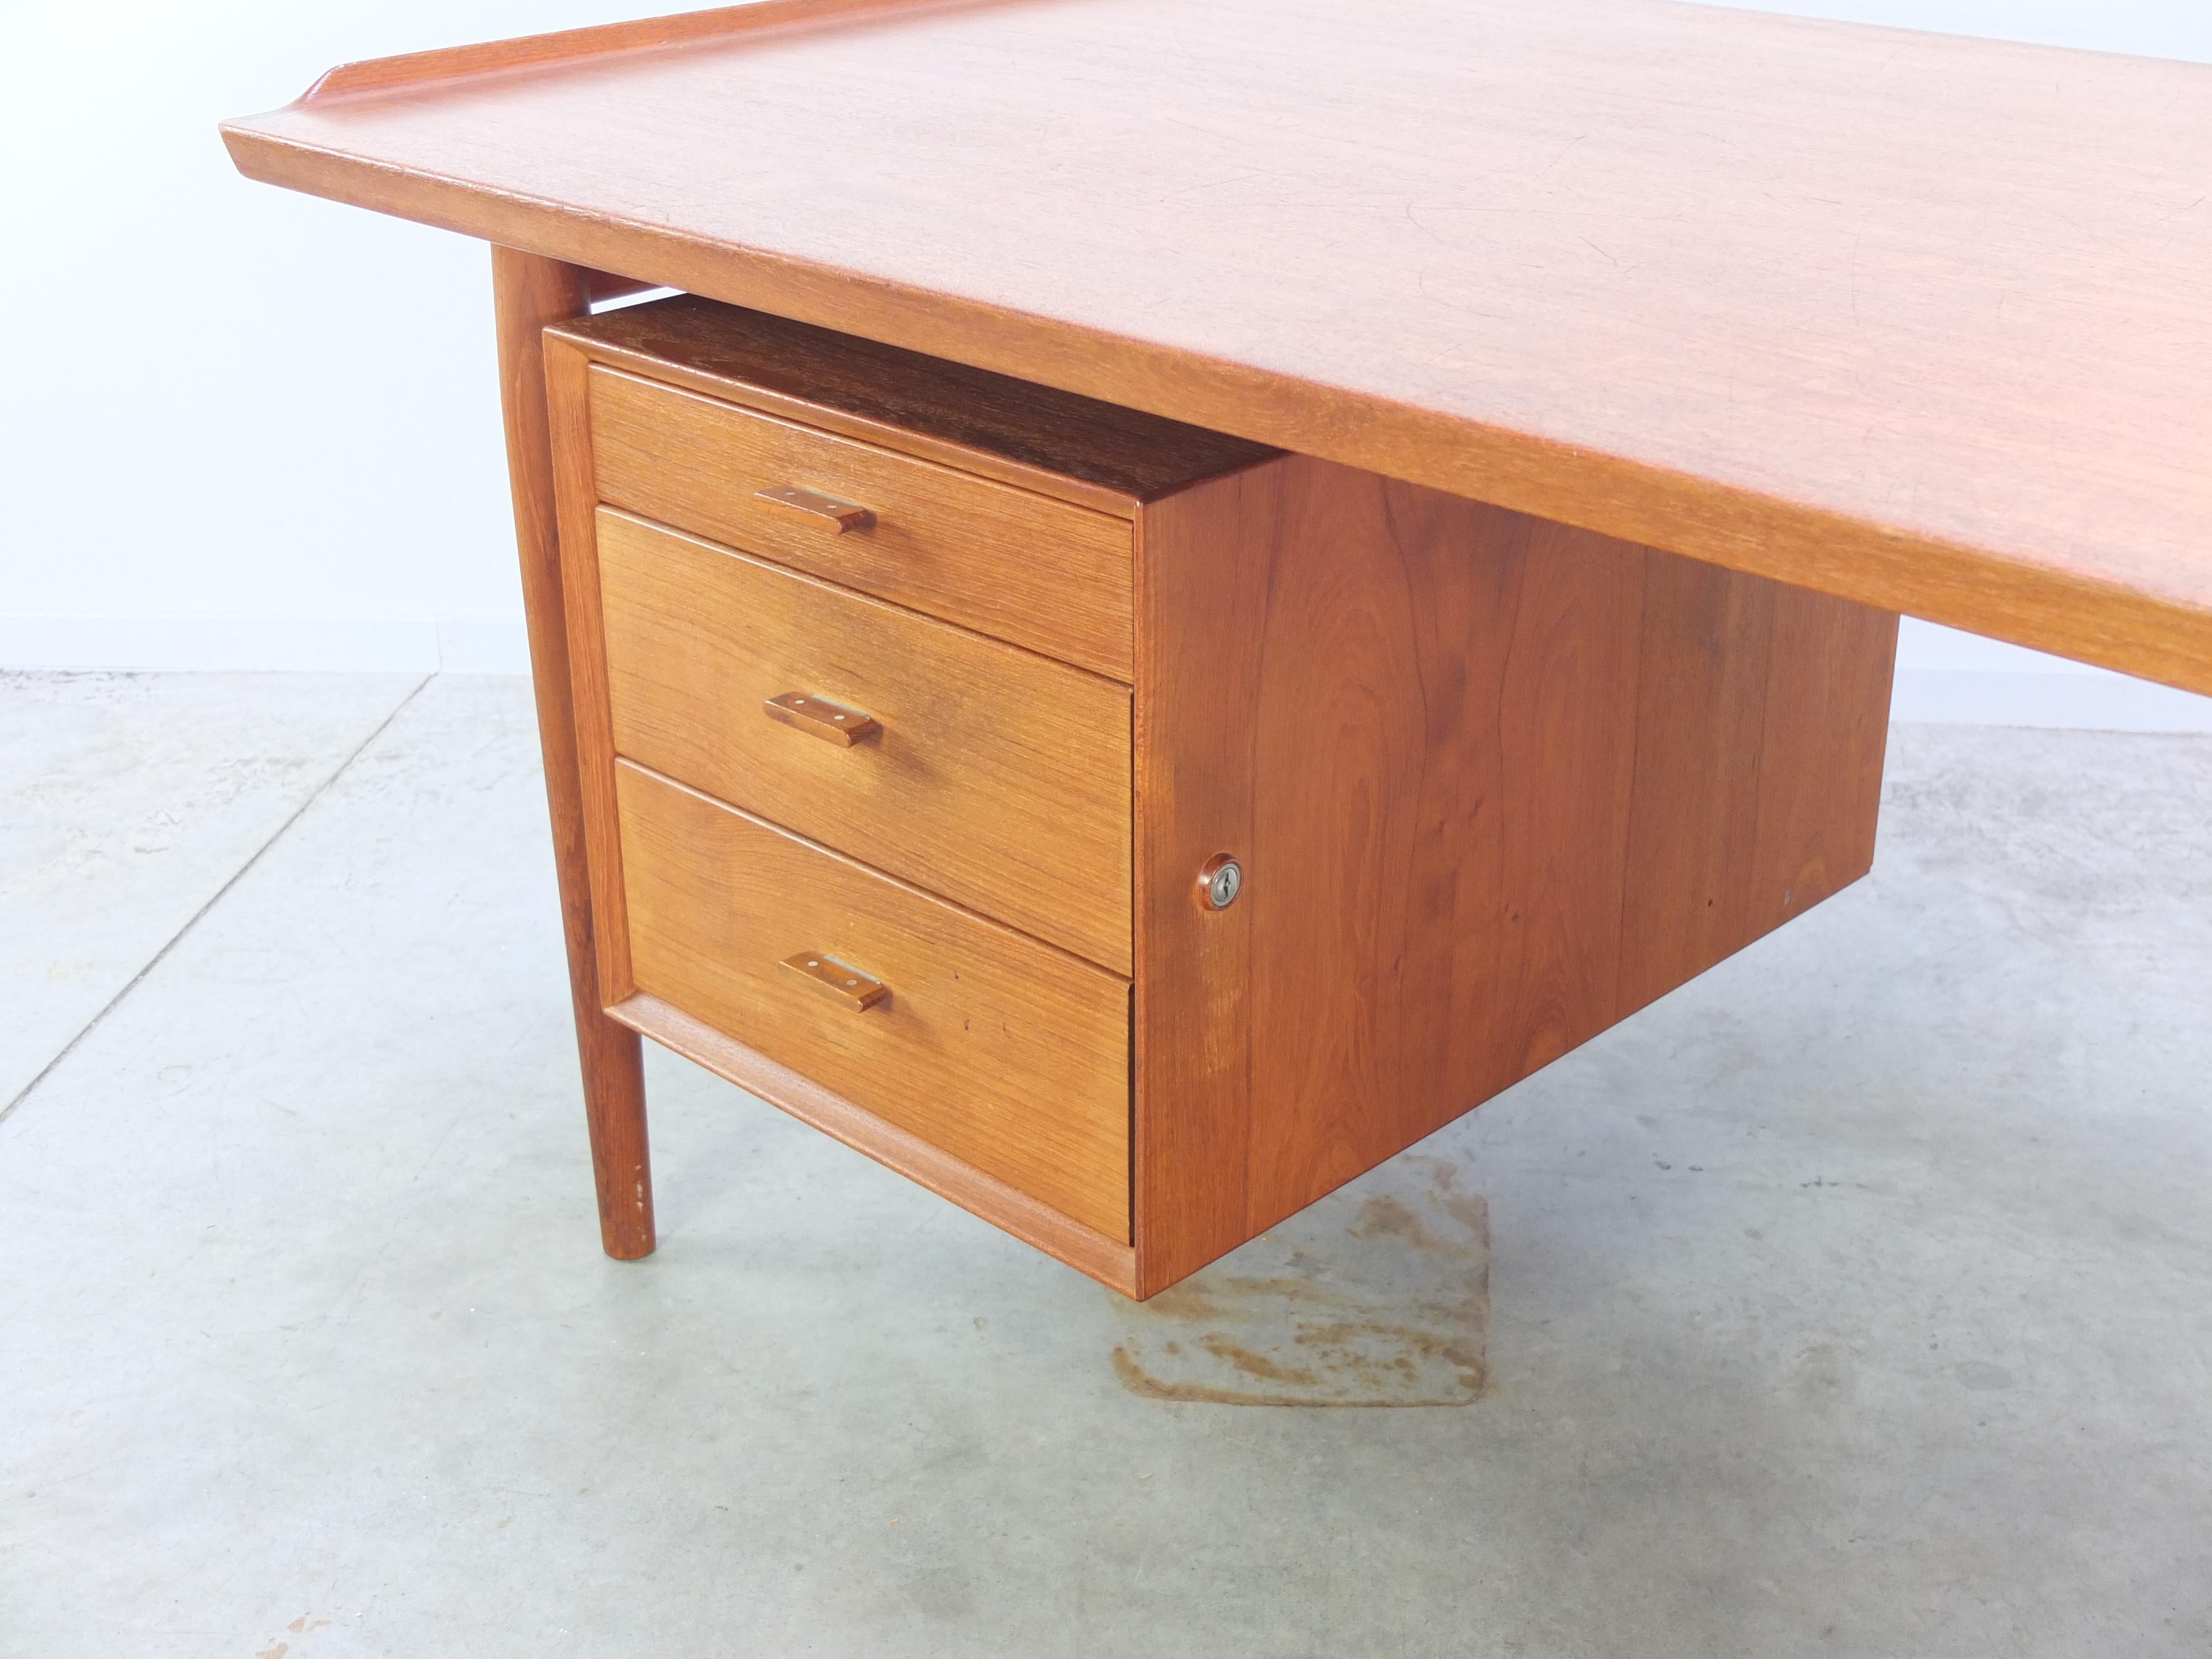 20th Century Large 'Model 207' Executive Teak Desk by Arne Vodder for Sibast Furniture, 1950s